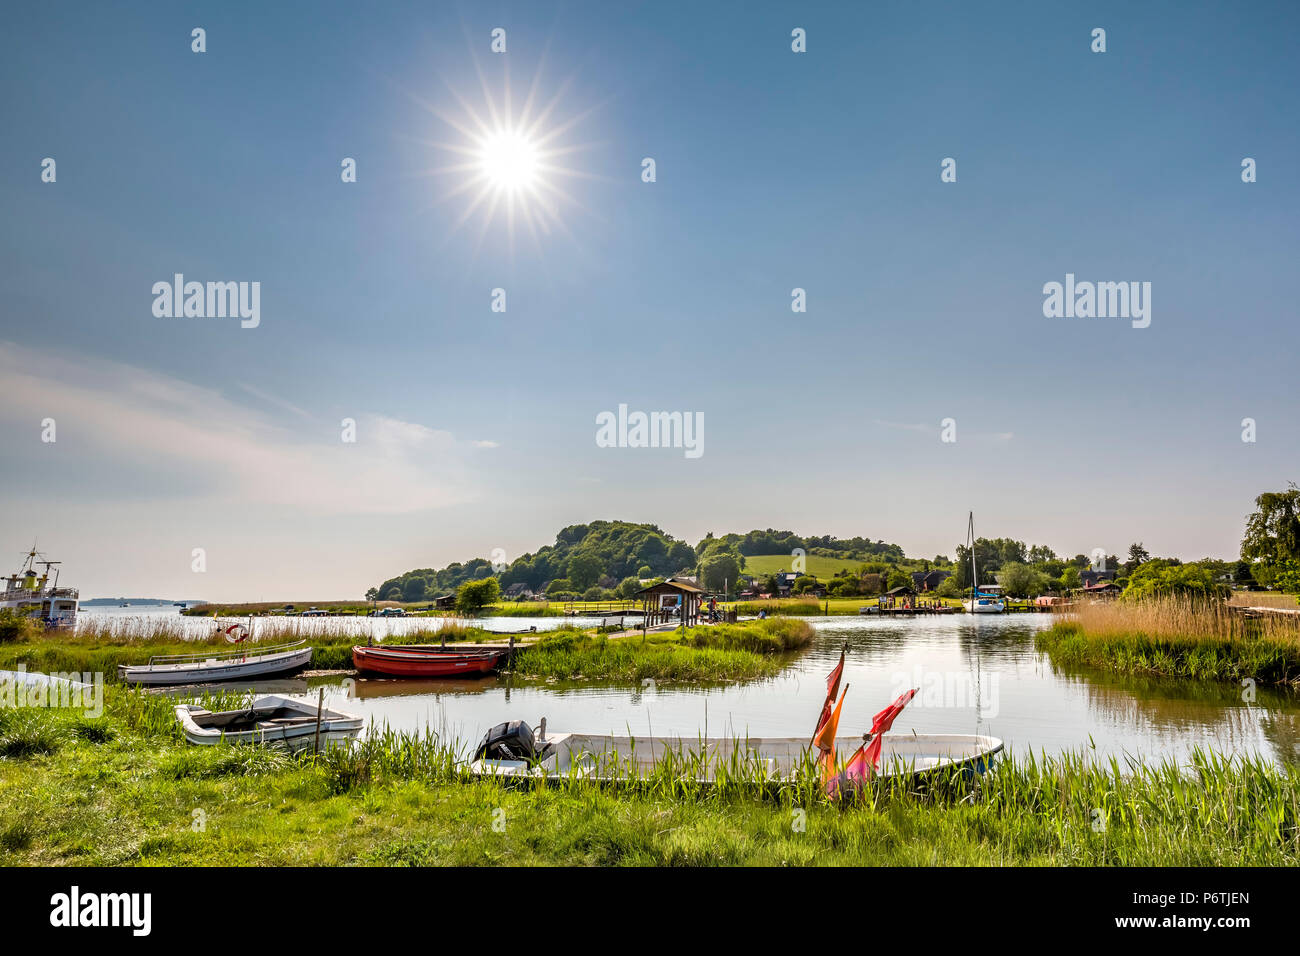 Sonnenuntergang, Baabe, Sellin, Insel Rügen, Mecklenburg-Vorpommern, Deutschland Stockfoto